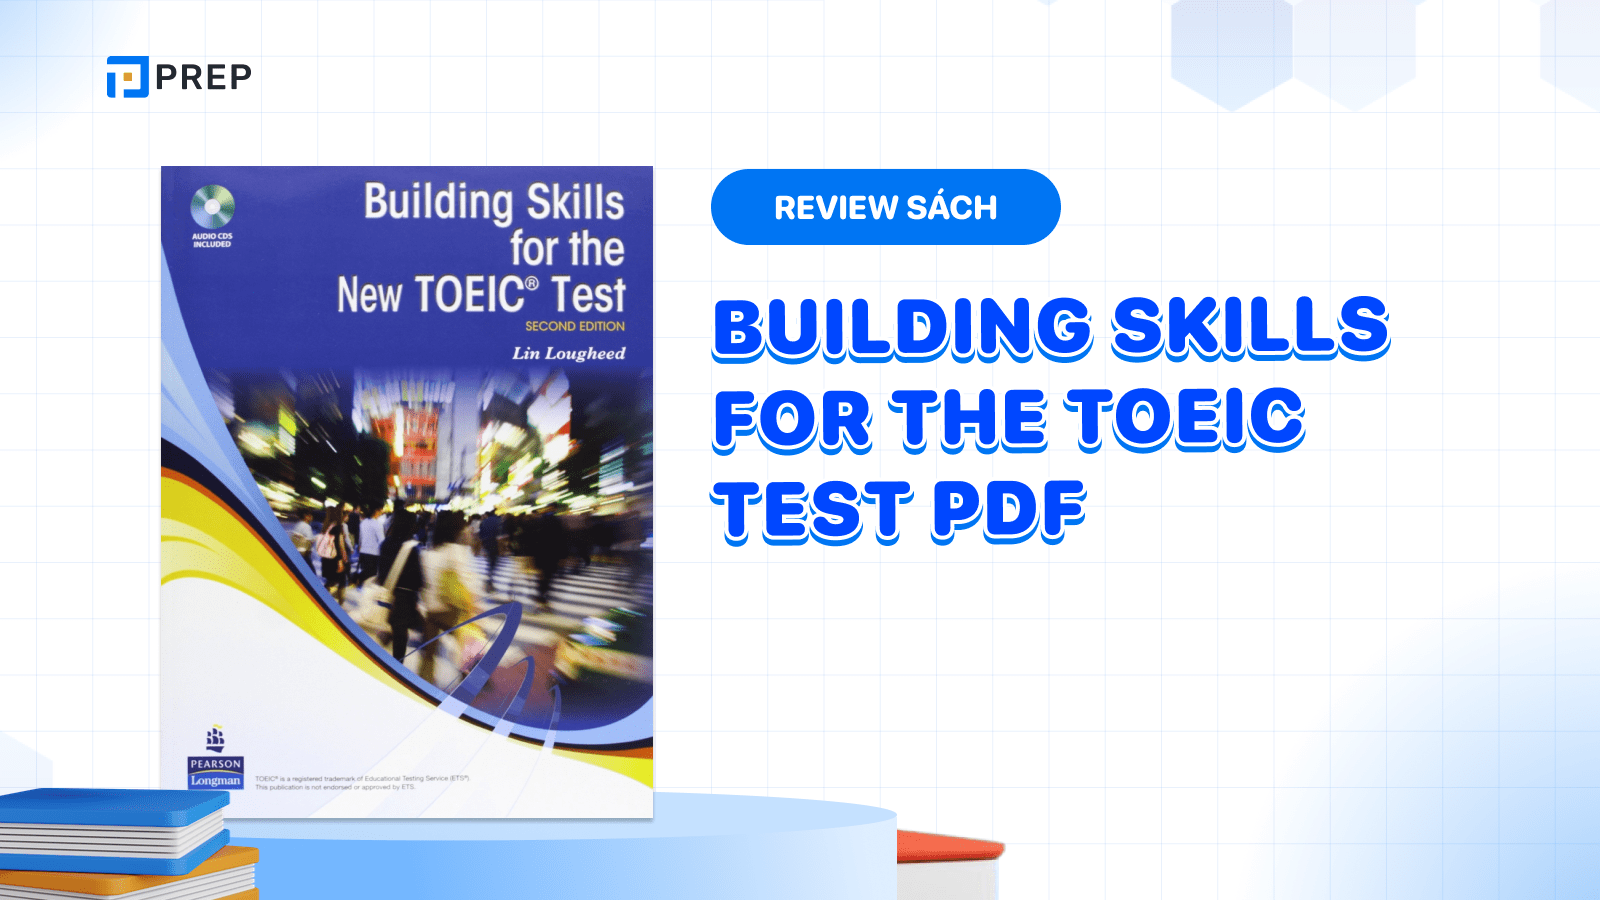 Xây dựng kỹ năng làm đề thi với Building Skills For the TOEIC Test PDF